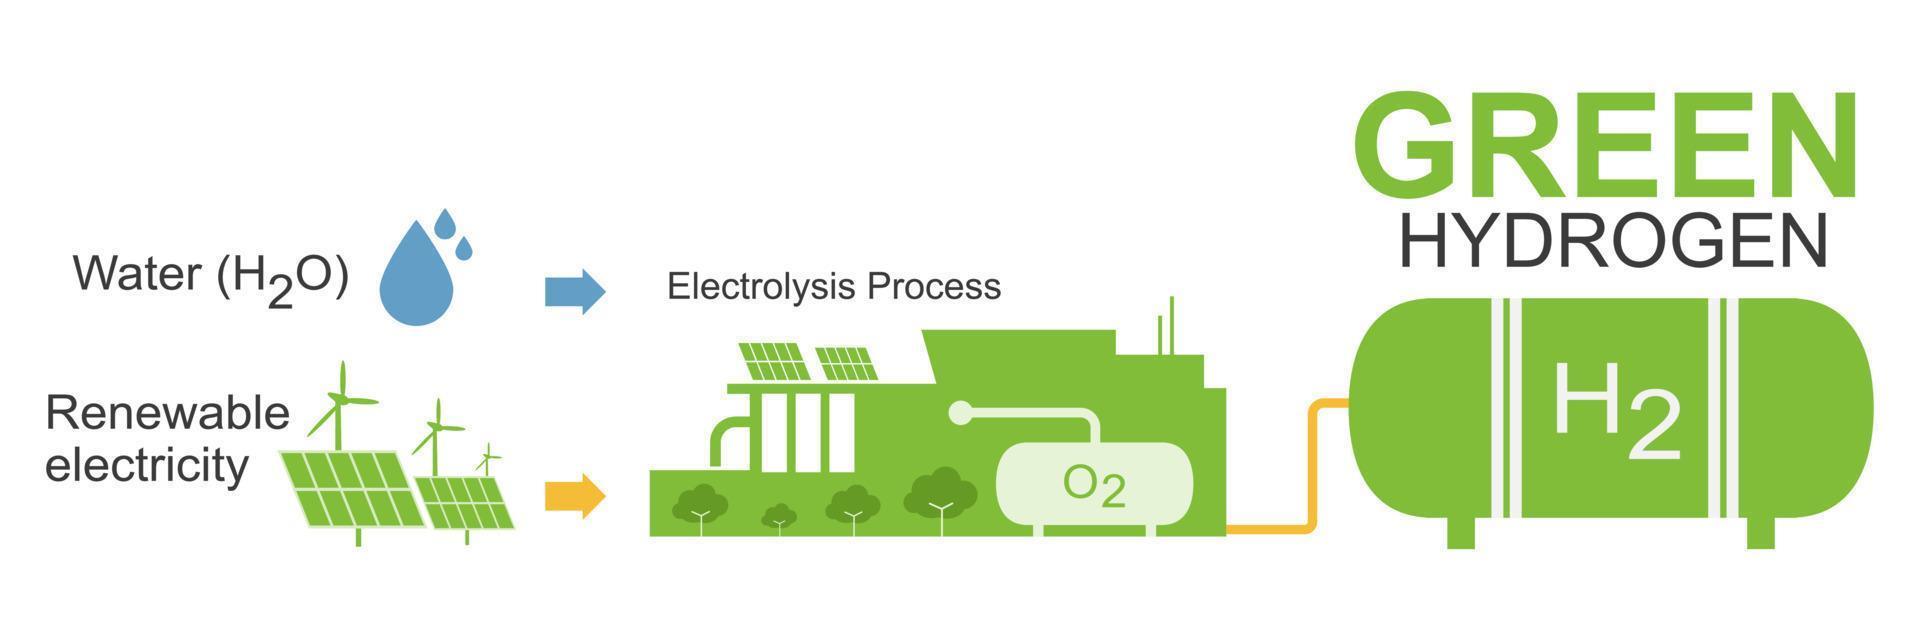 tipo de hidrógeno producción verde color electrólisis ecología para limpiar energía cómo trabajo diagrama concepto ilustración vector